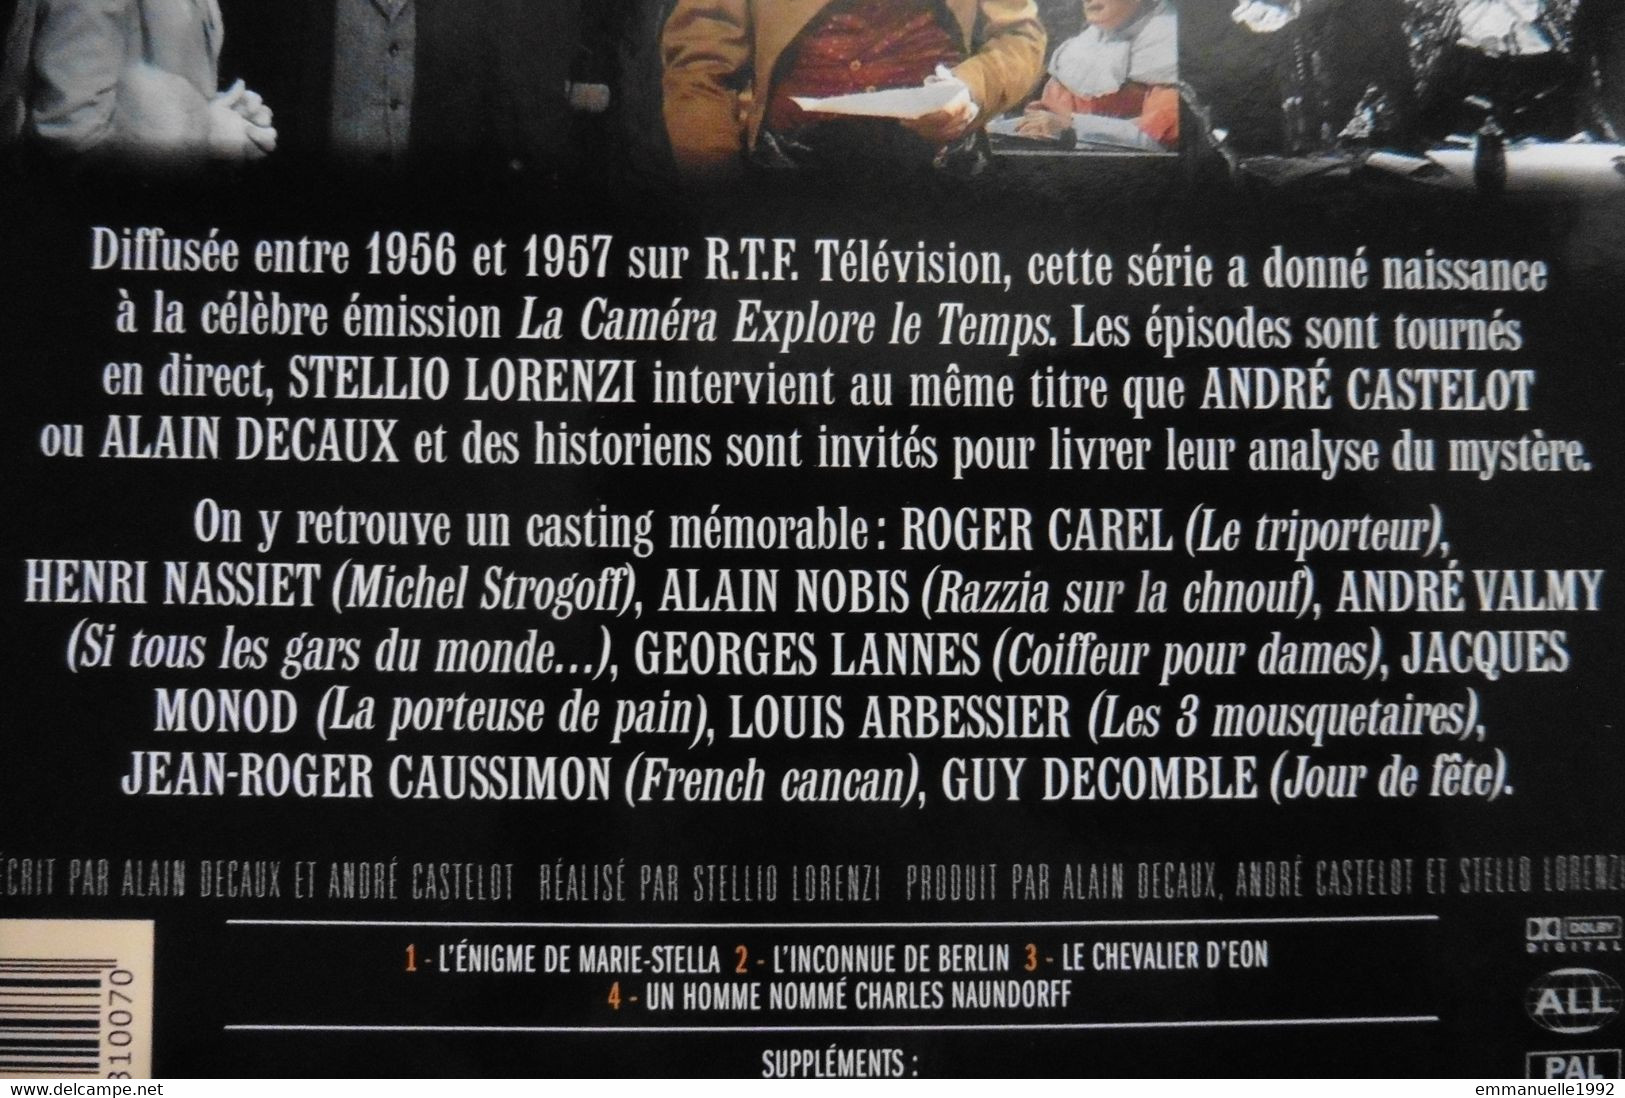 DVD Série TV Les énigmes De L'Histoire Decaux Castelot - Le Chevalier D'Eon - Sans Boitier - RARE ! - Dokumentarfilme